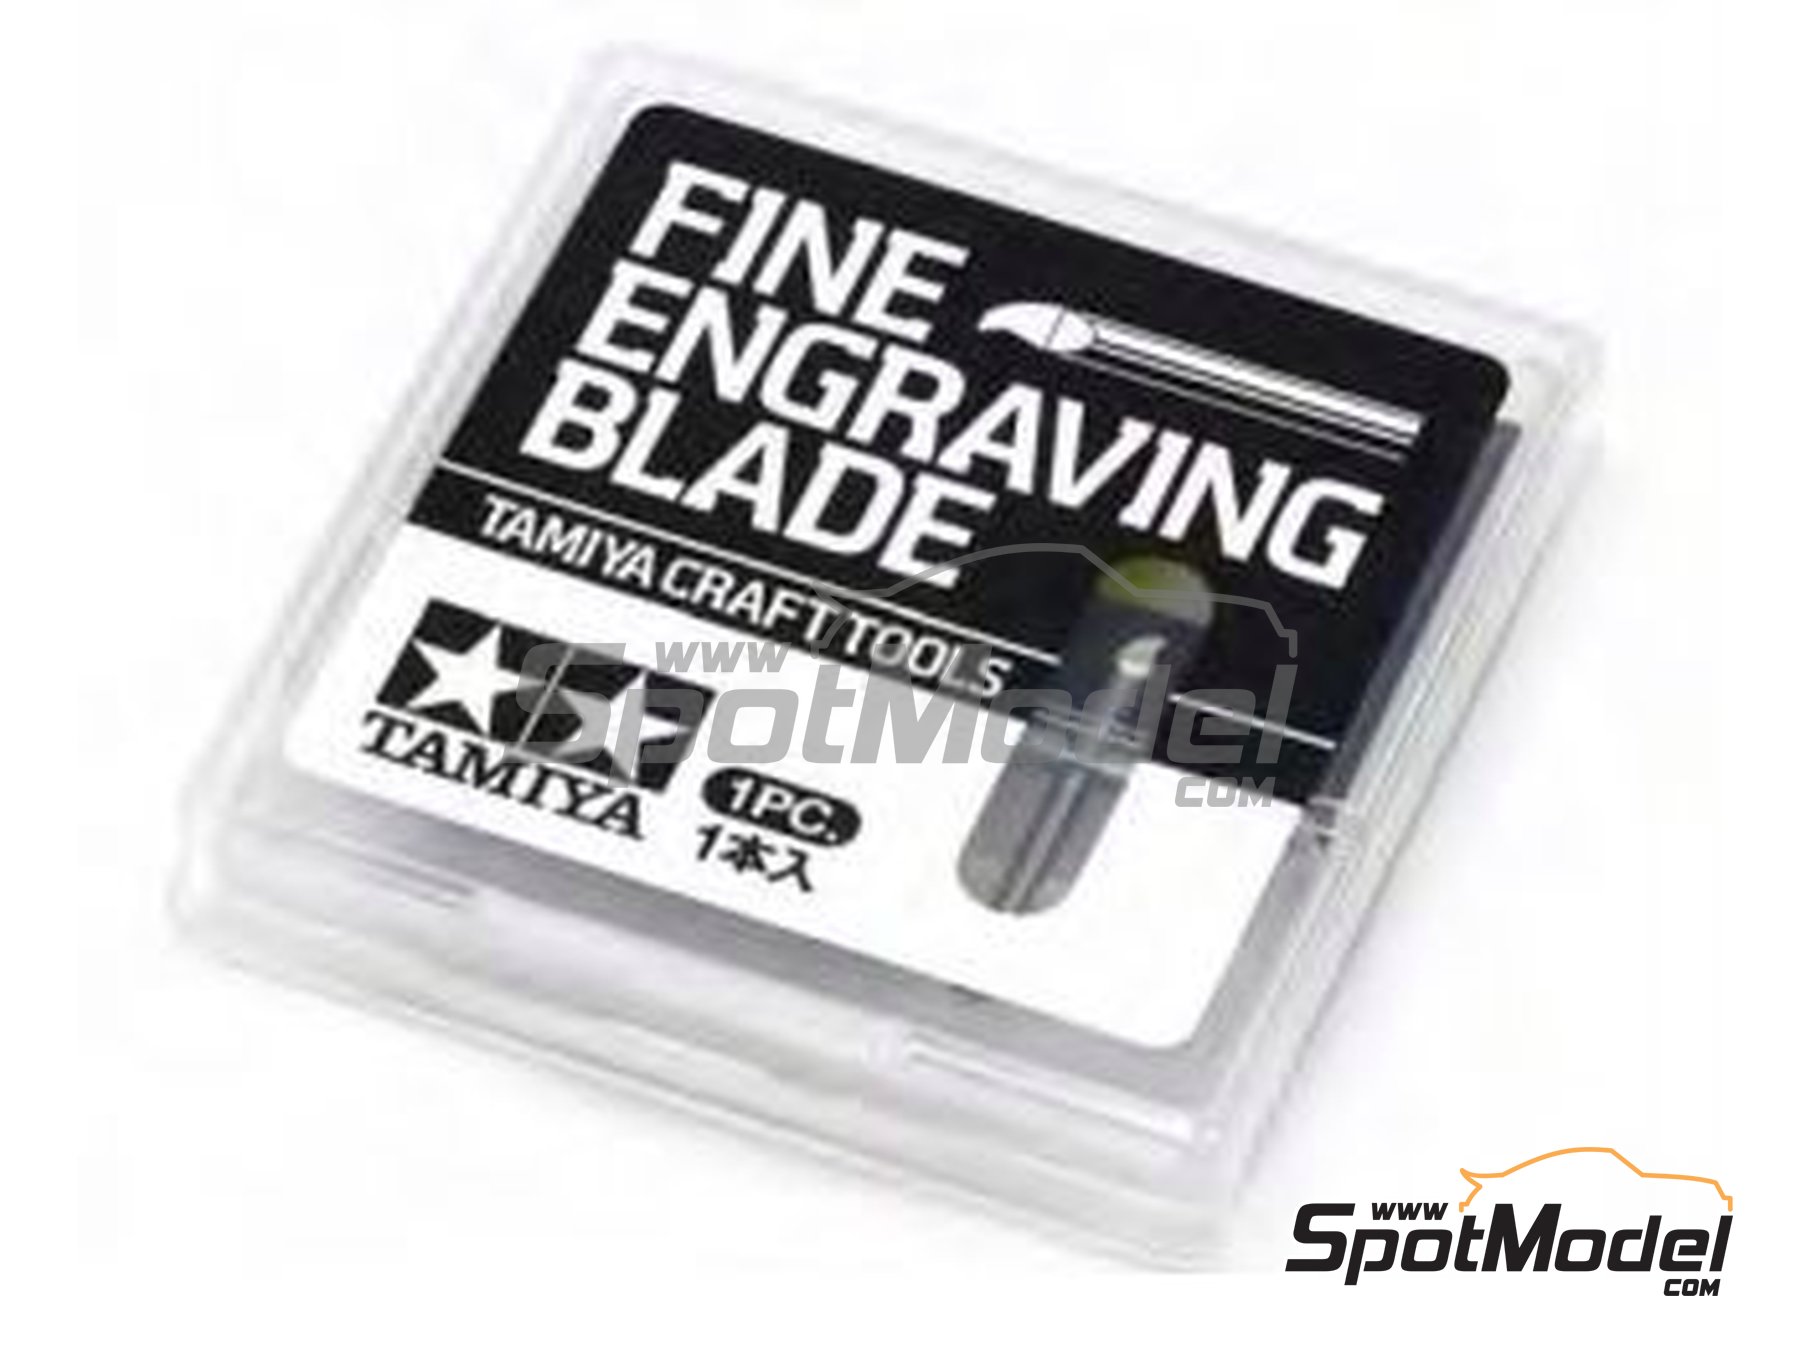 Tamiya Fine Engraving Blade 0.3mm TAM74137